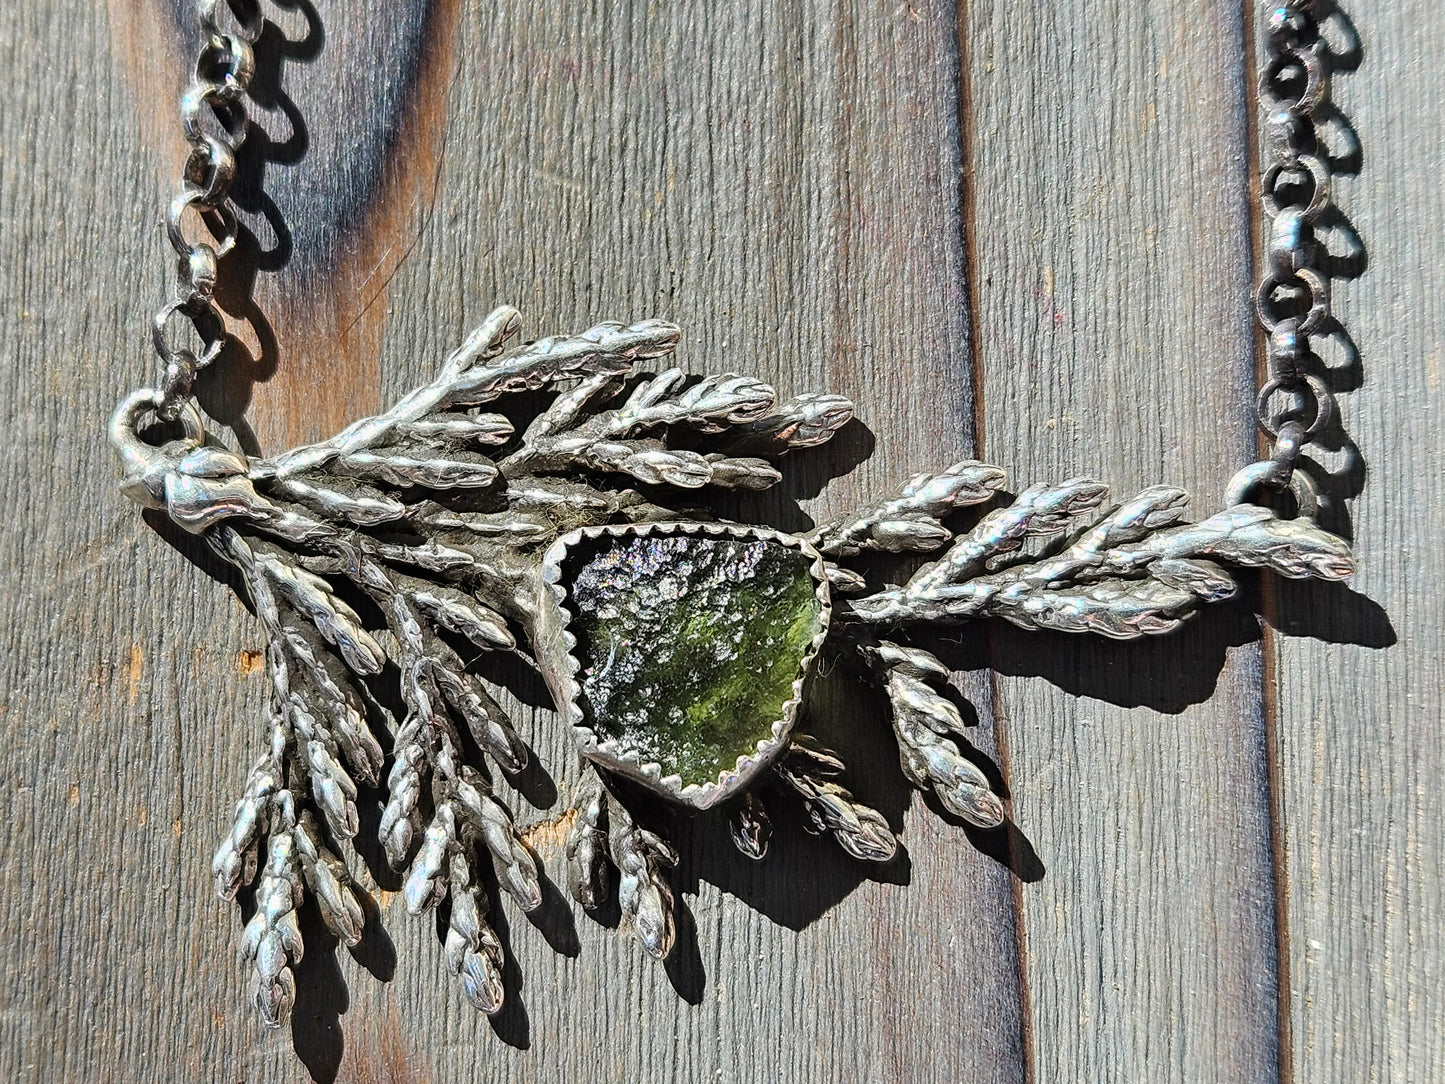 Cedar Leaf and Moldavite Necklace